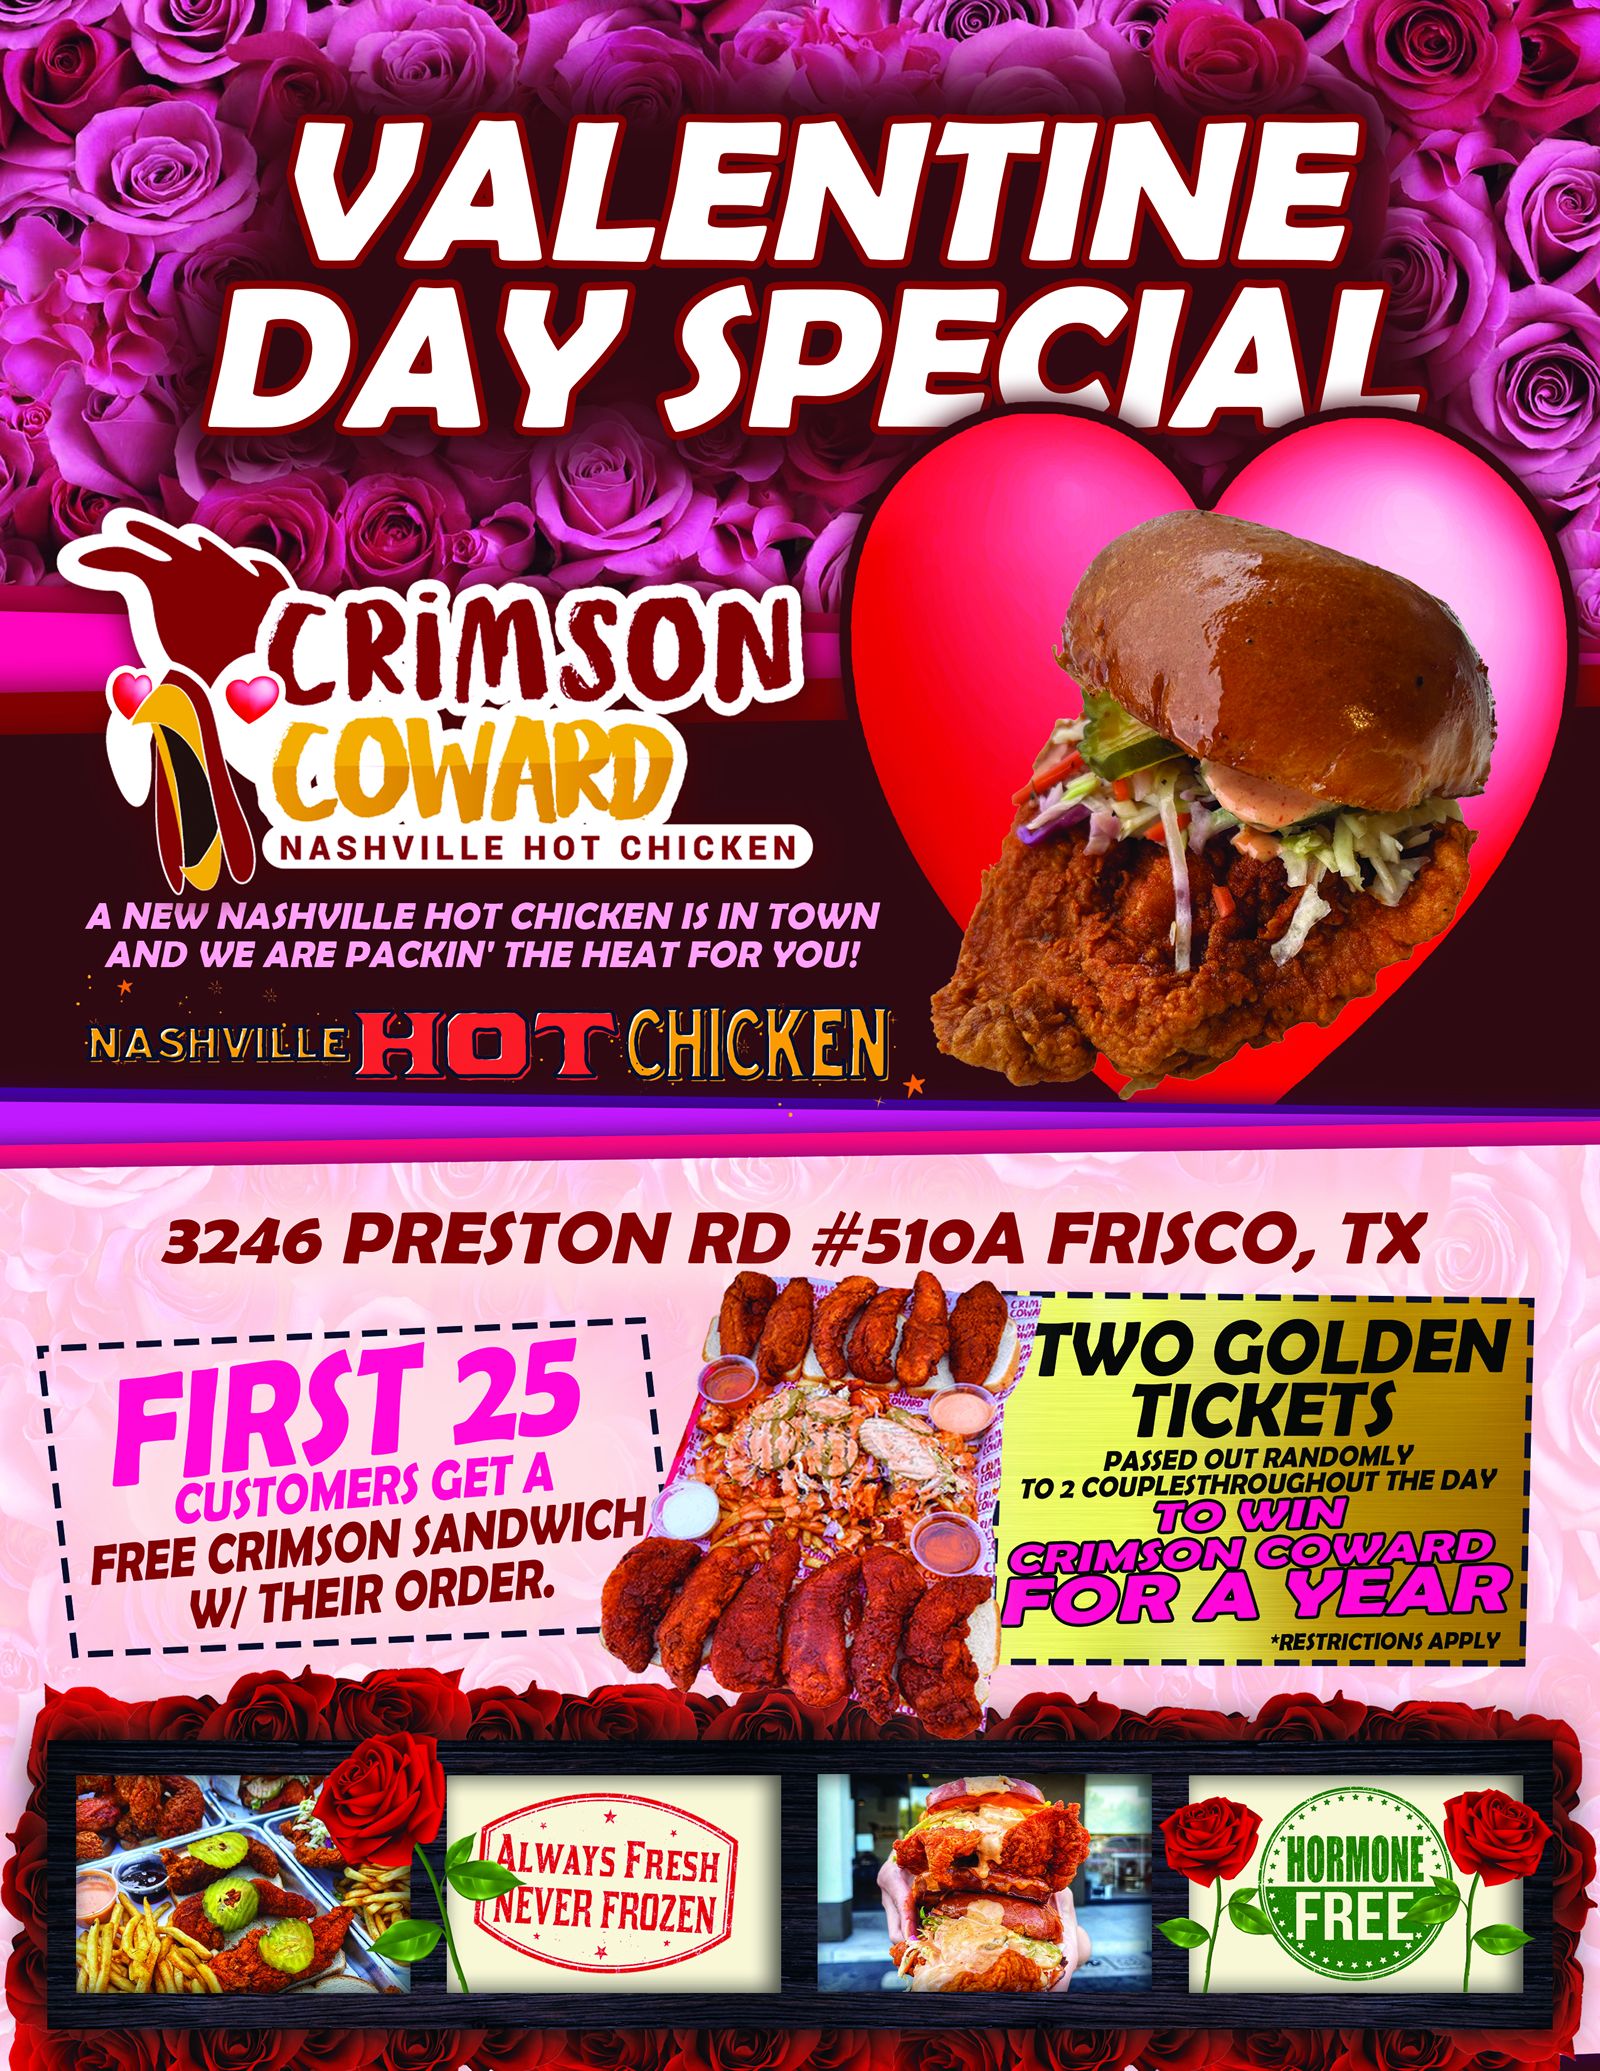 New Frisco Nashville Hot Chicken Restaurant Announces Valentine's Day Promotion